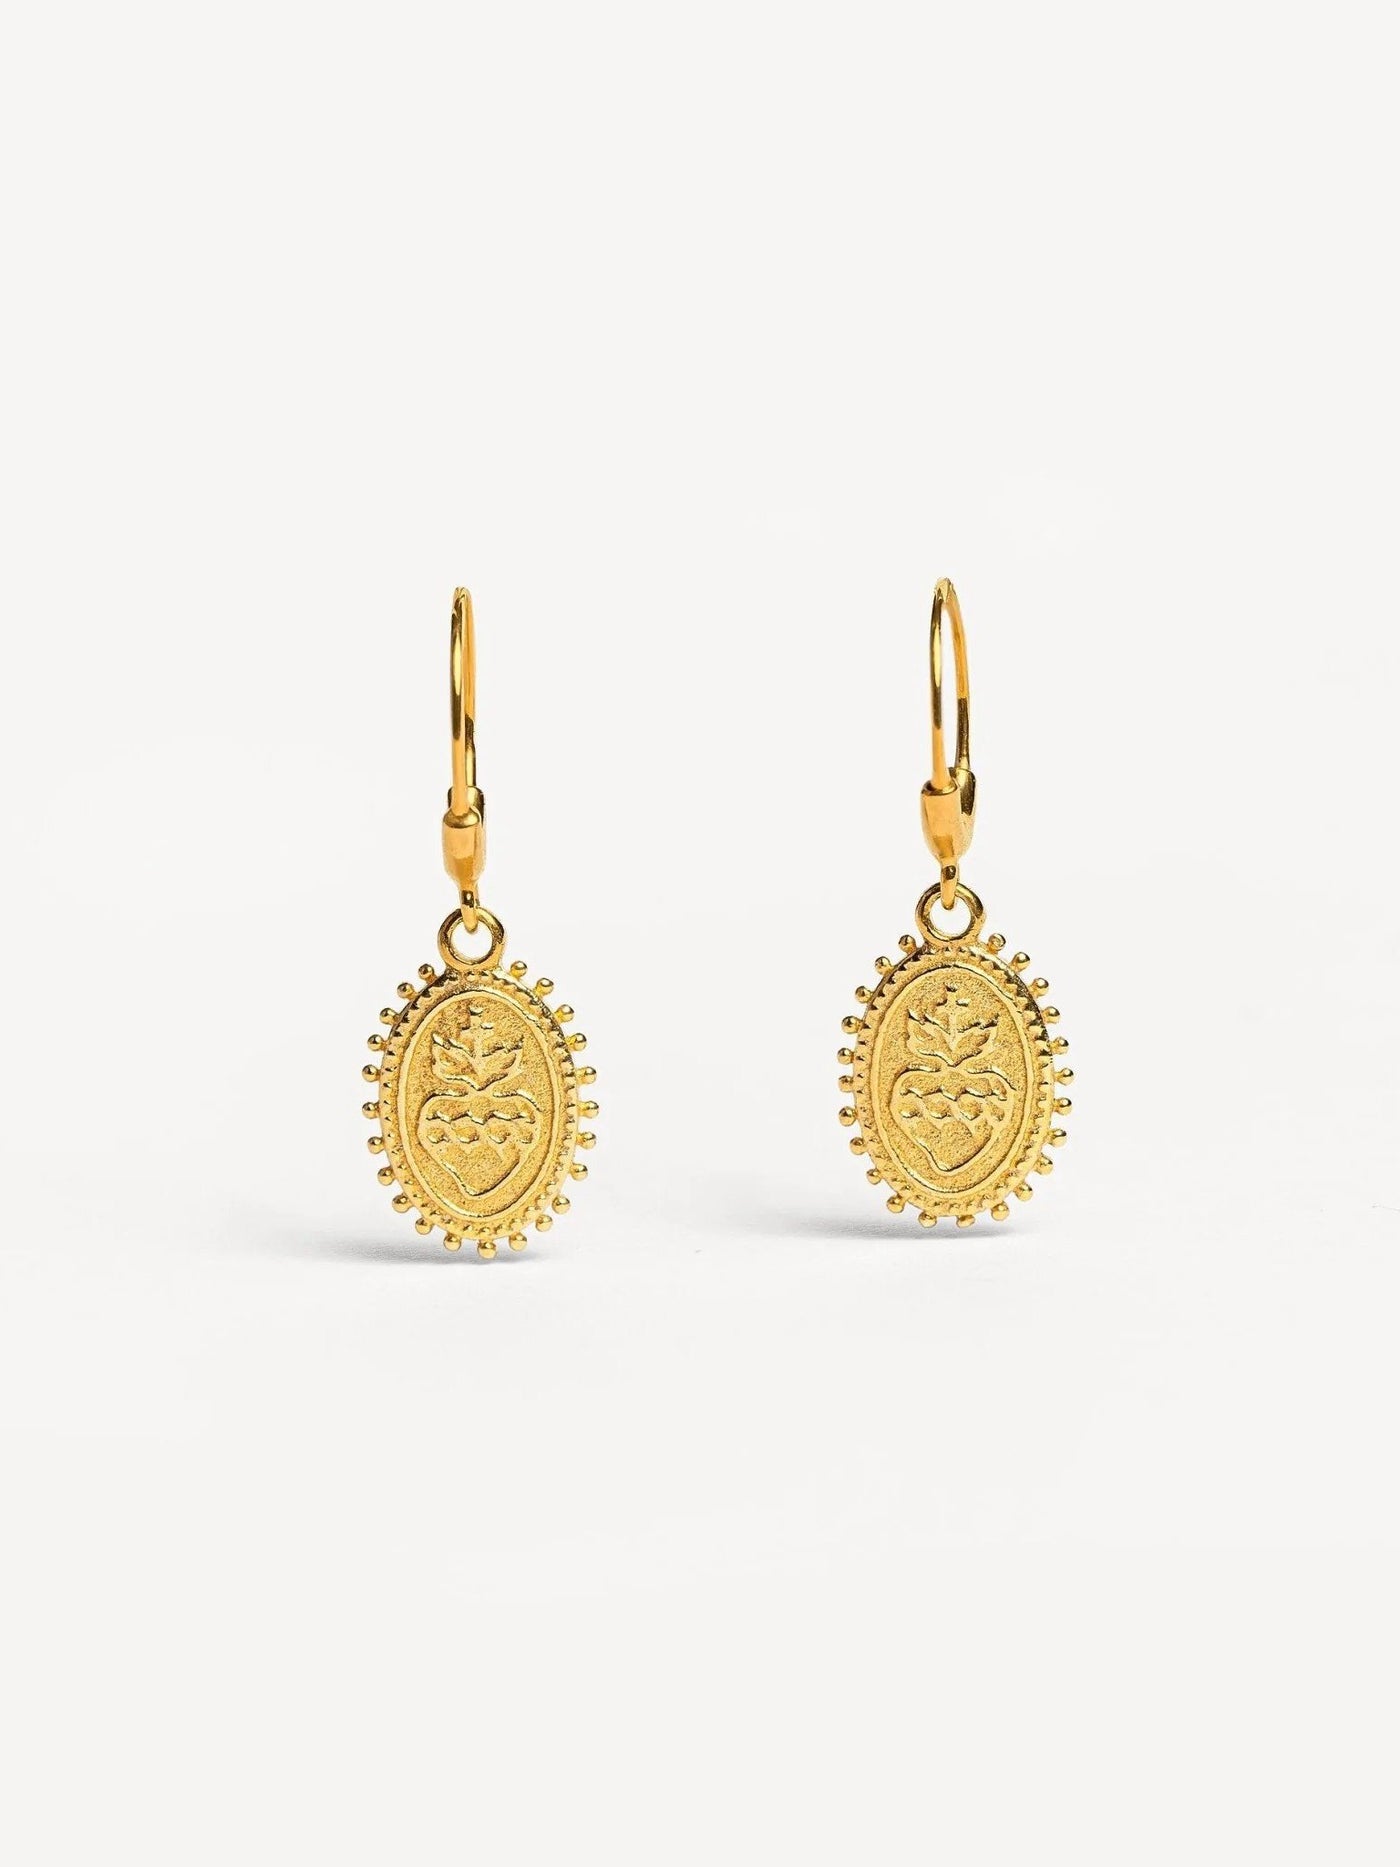 Varonessa Flaming Heart Dangle Earrings - 24K Gold PlatedPair925 silver jewelryartisan earringsLunai Jewelry